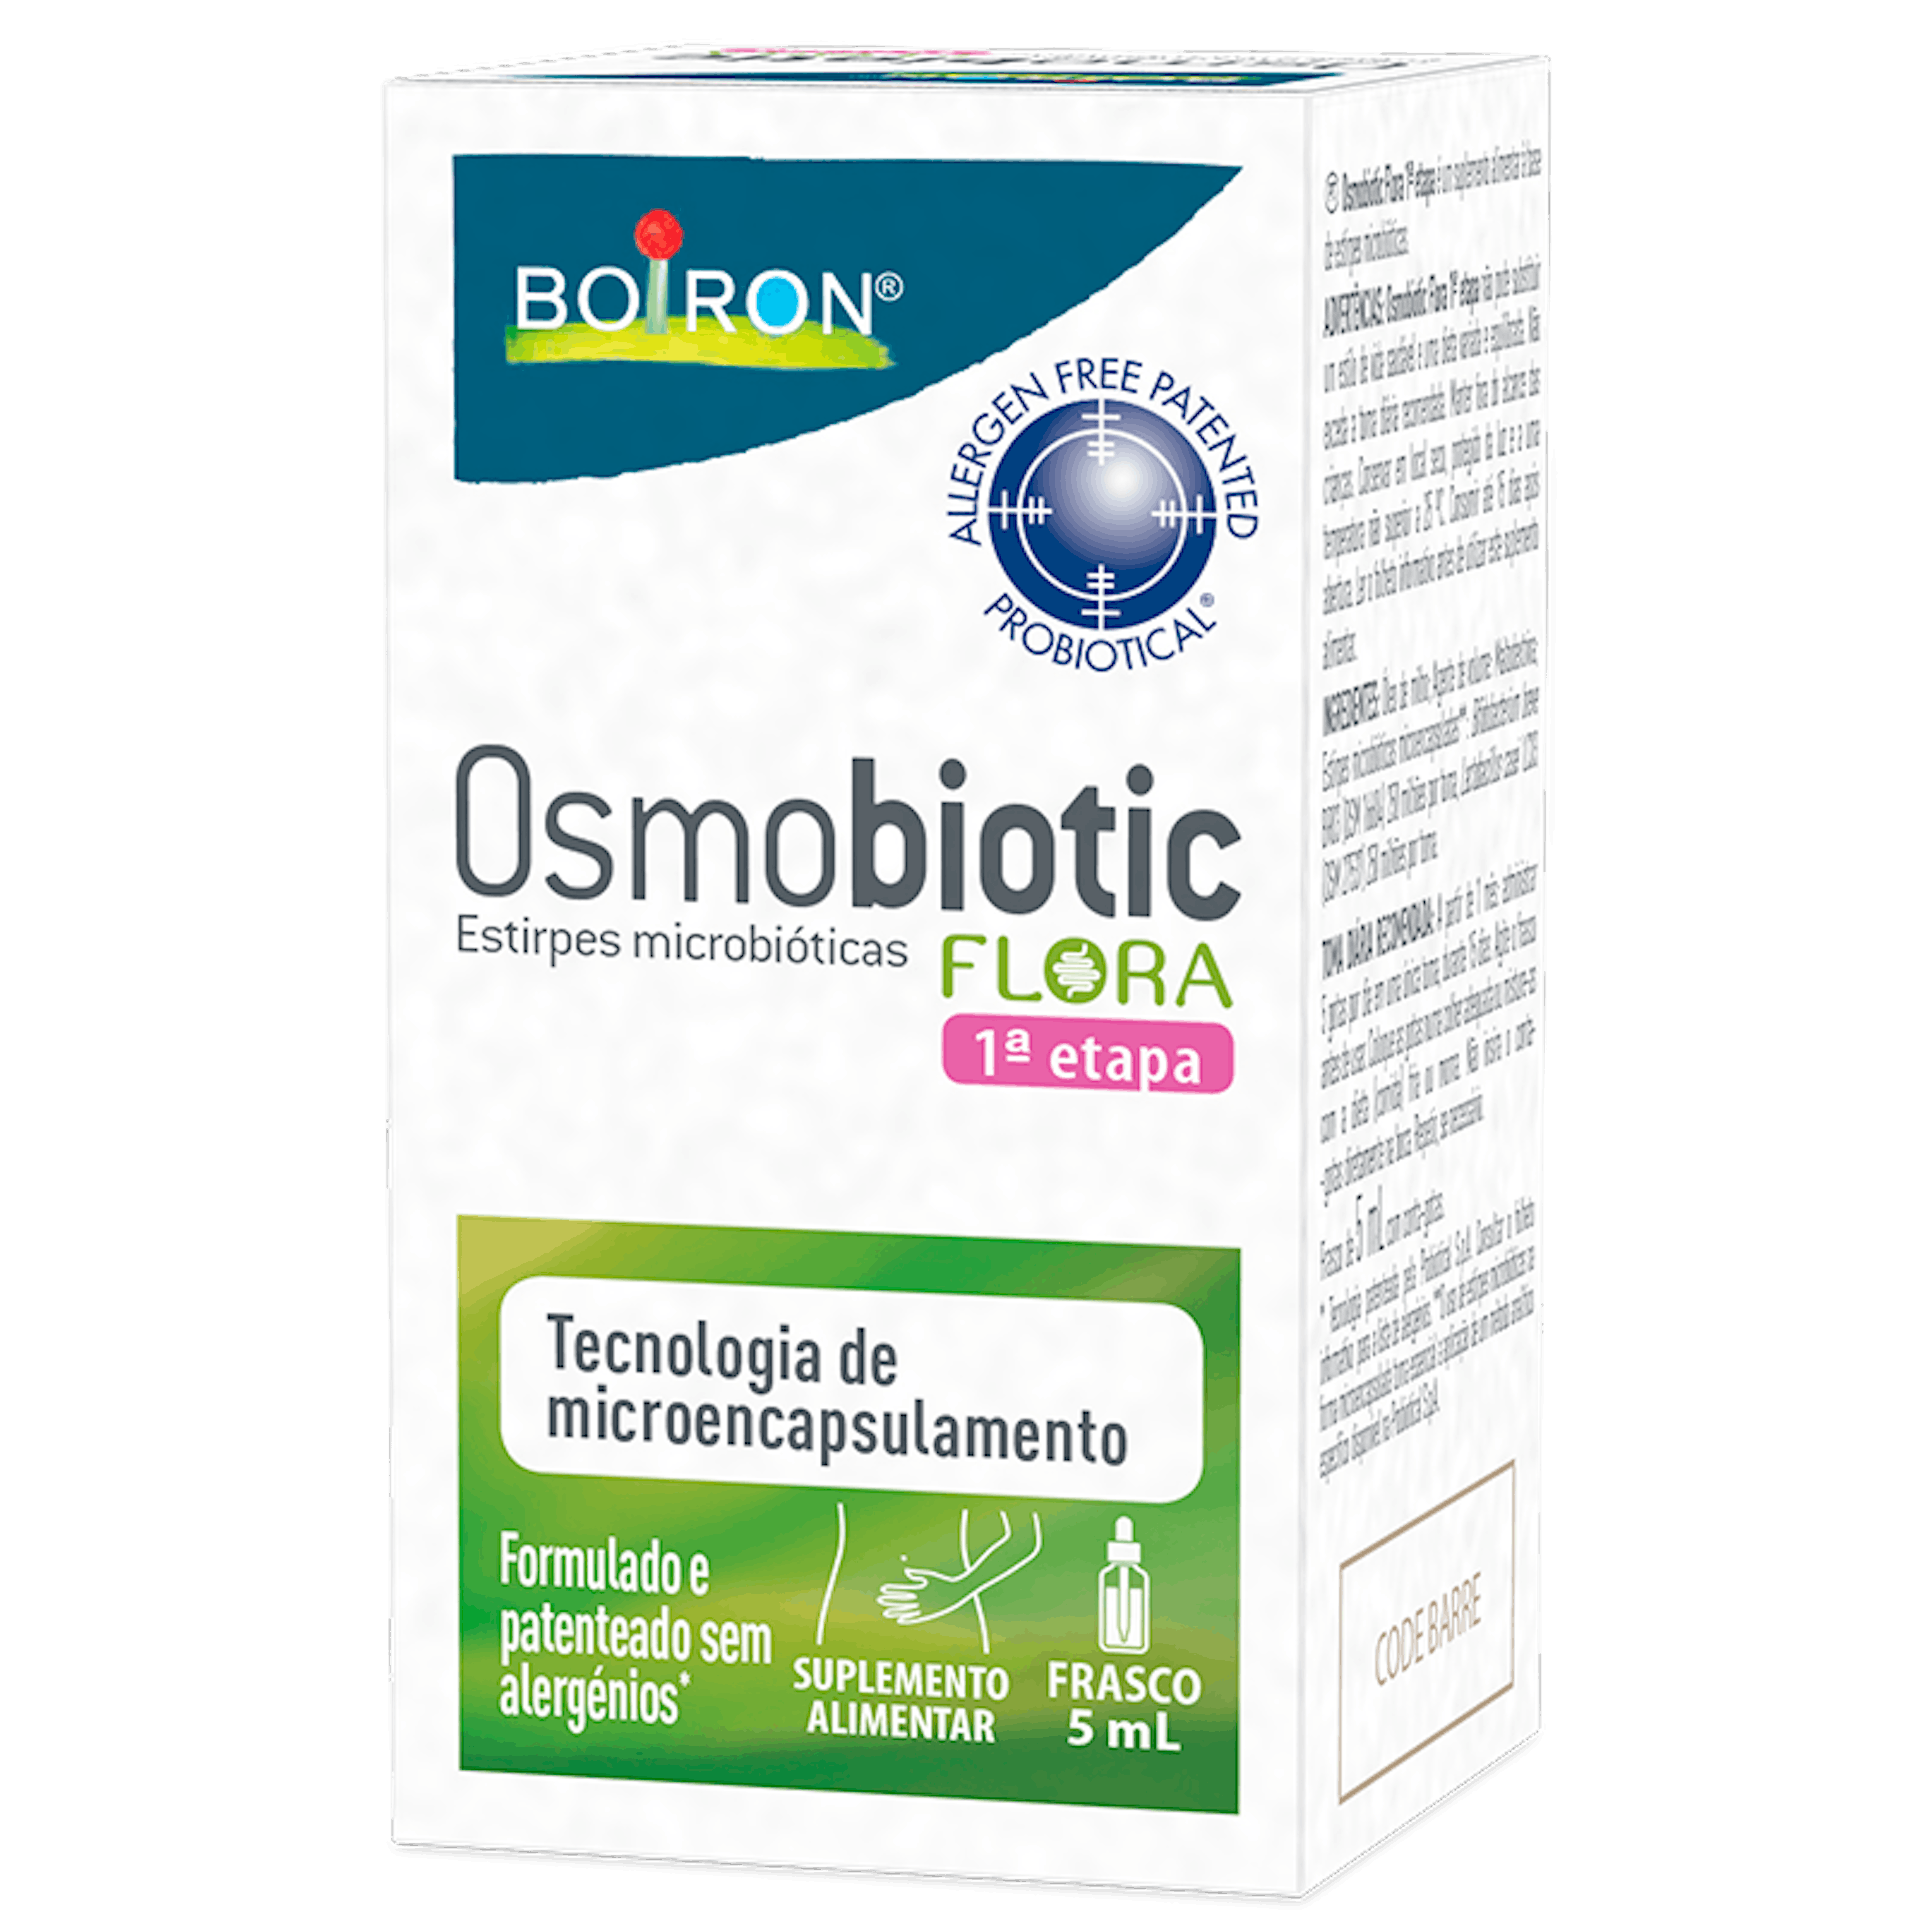 Osmobiotic 1 etapa